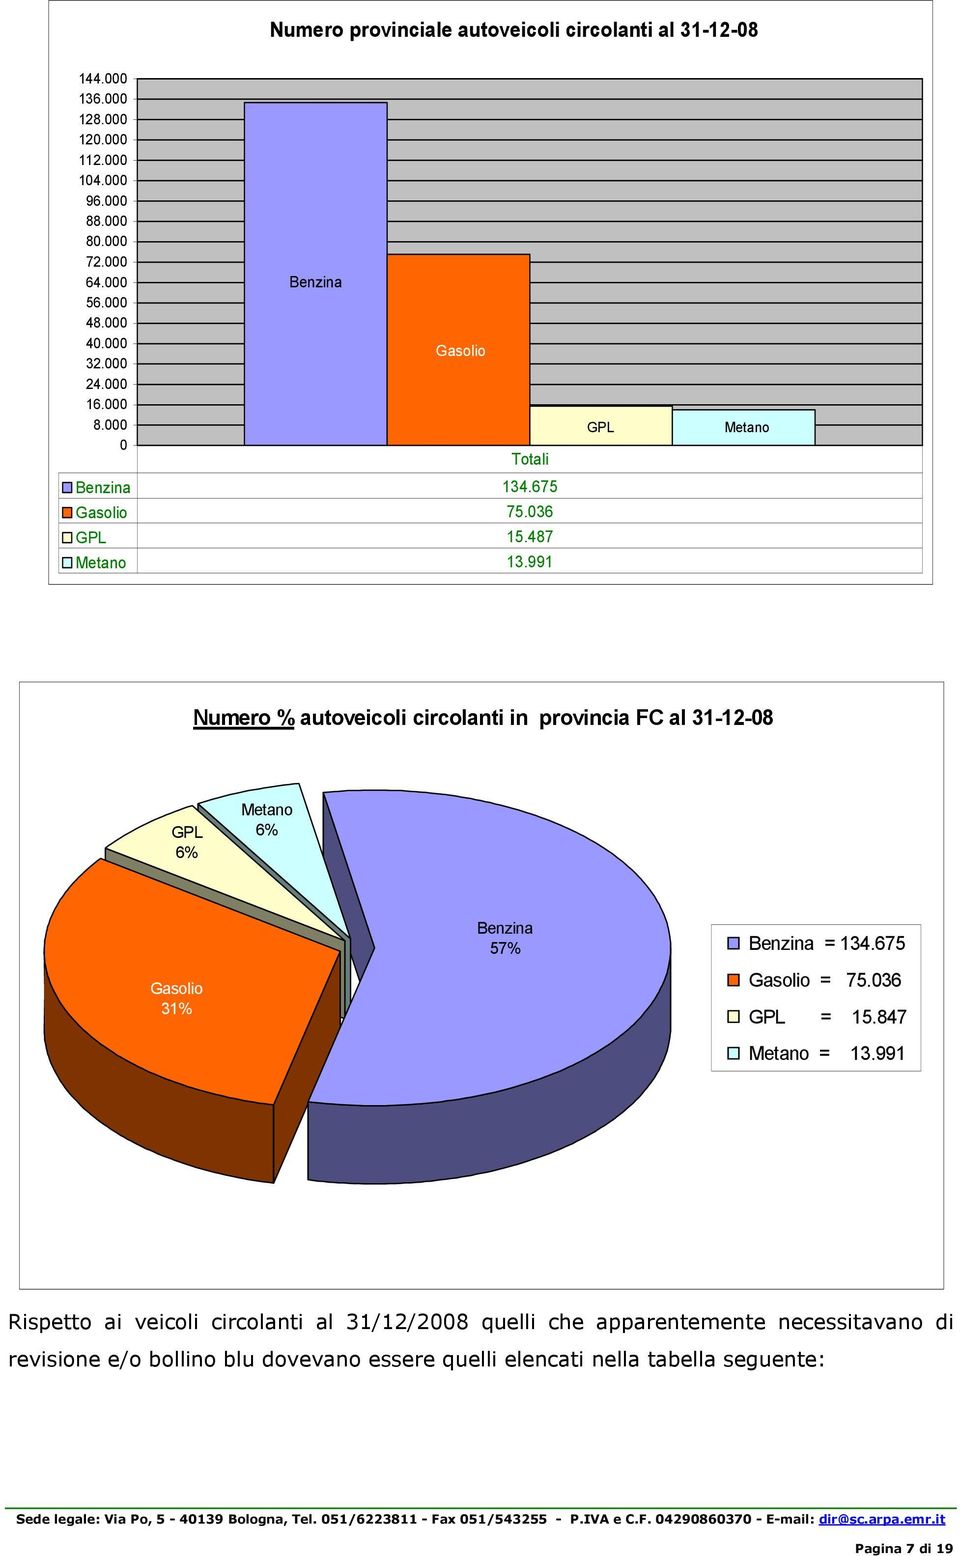 991 GPL Metano Numero % autoveicoli circolanti in provincia FC al 31-12-08 GPL 6% Metano 6% Benzina 57% Benzina = 134.675 Gasolio 31% Gasolio = 75.